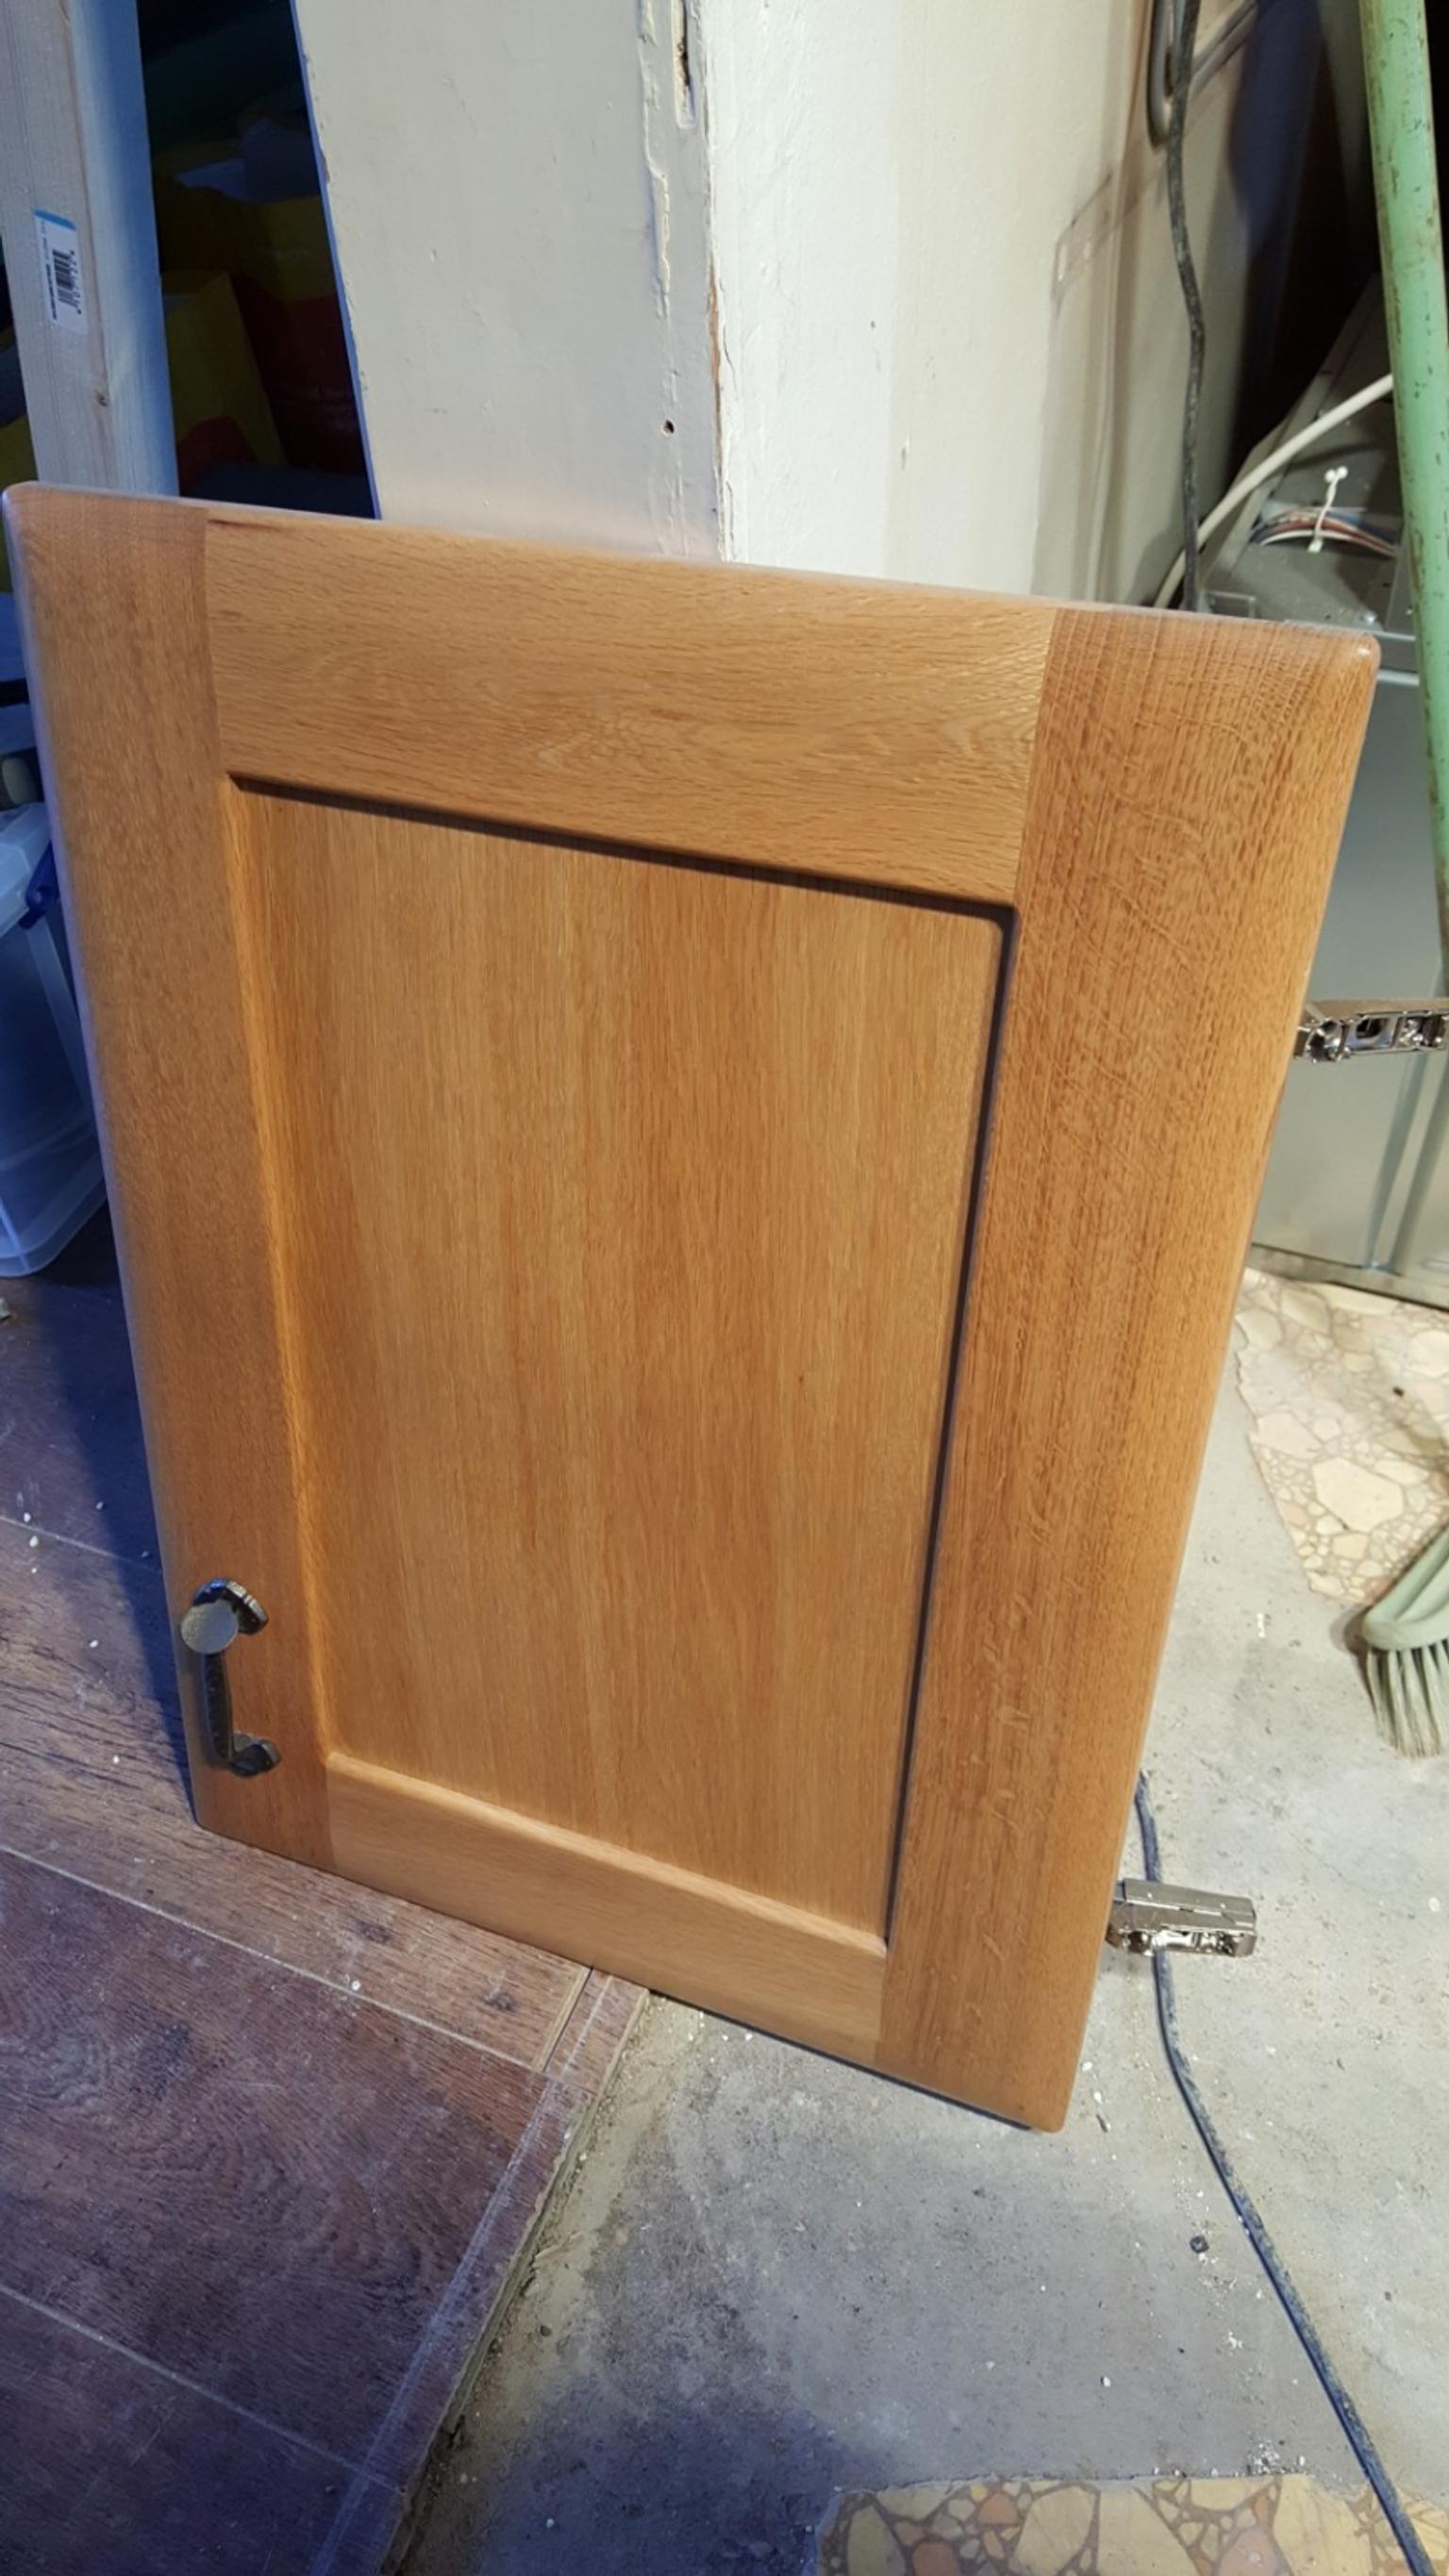 Moben Kitchen Solid Wood Doors In Rh12 Horsham Fur 30 00 Zum